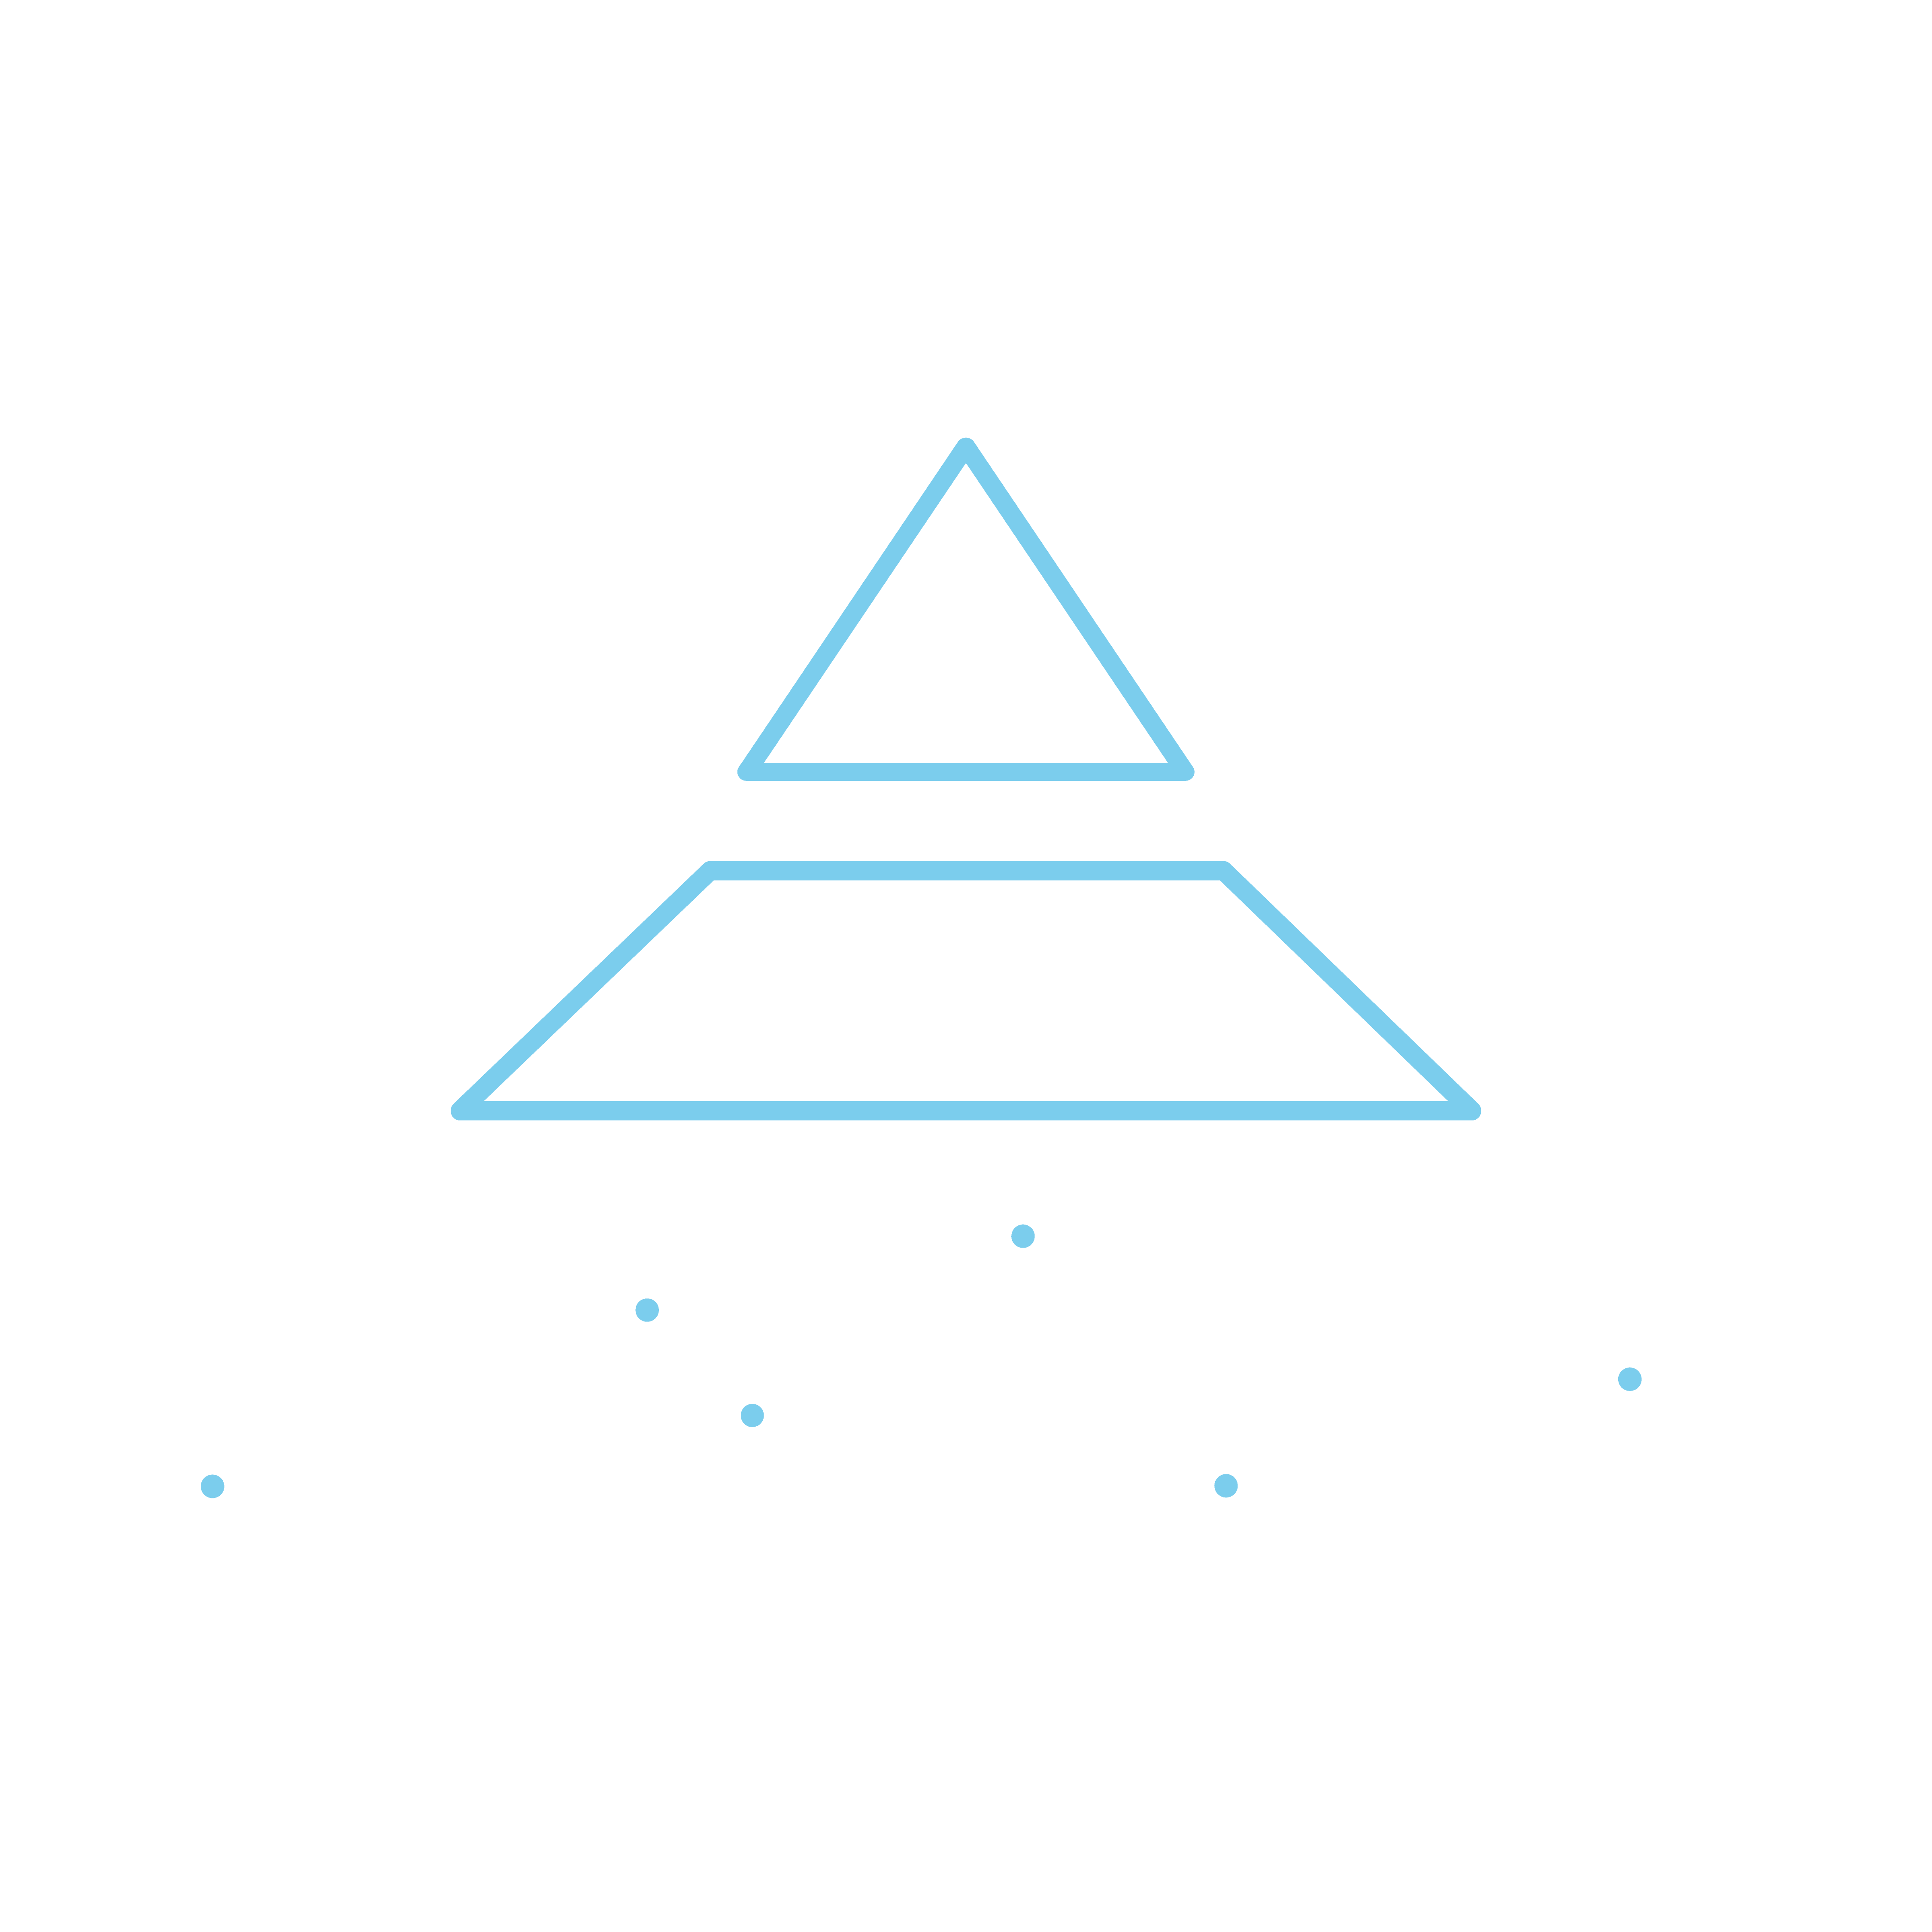 PC SHOP